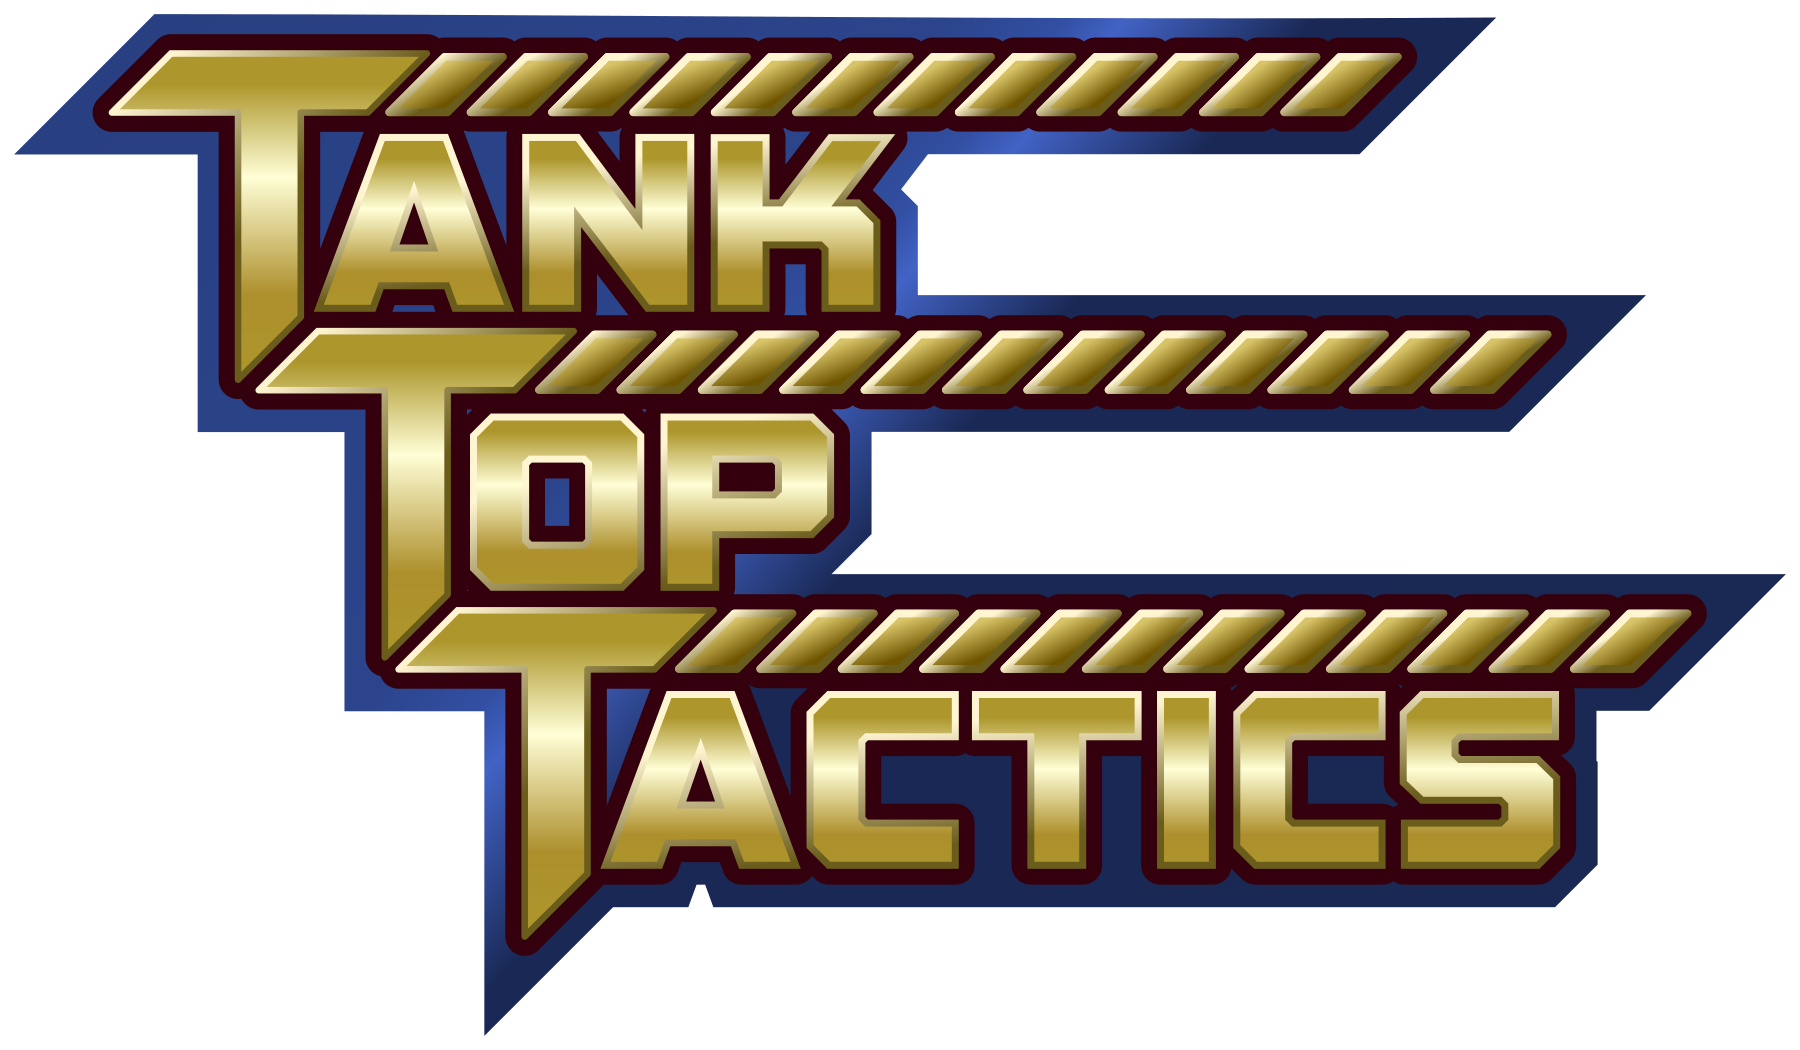 Tank Top Tactics